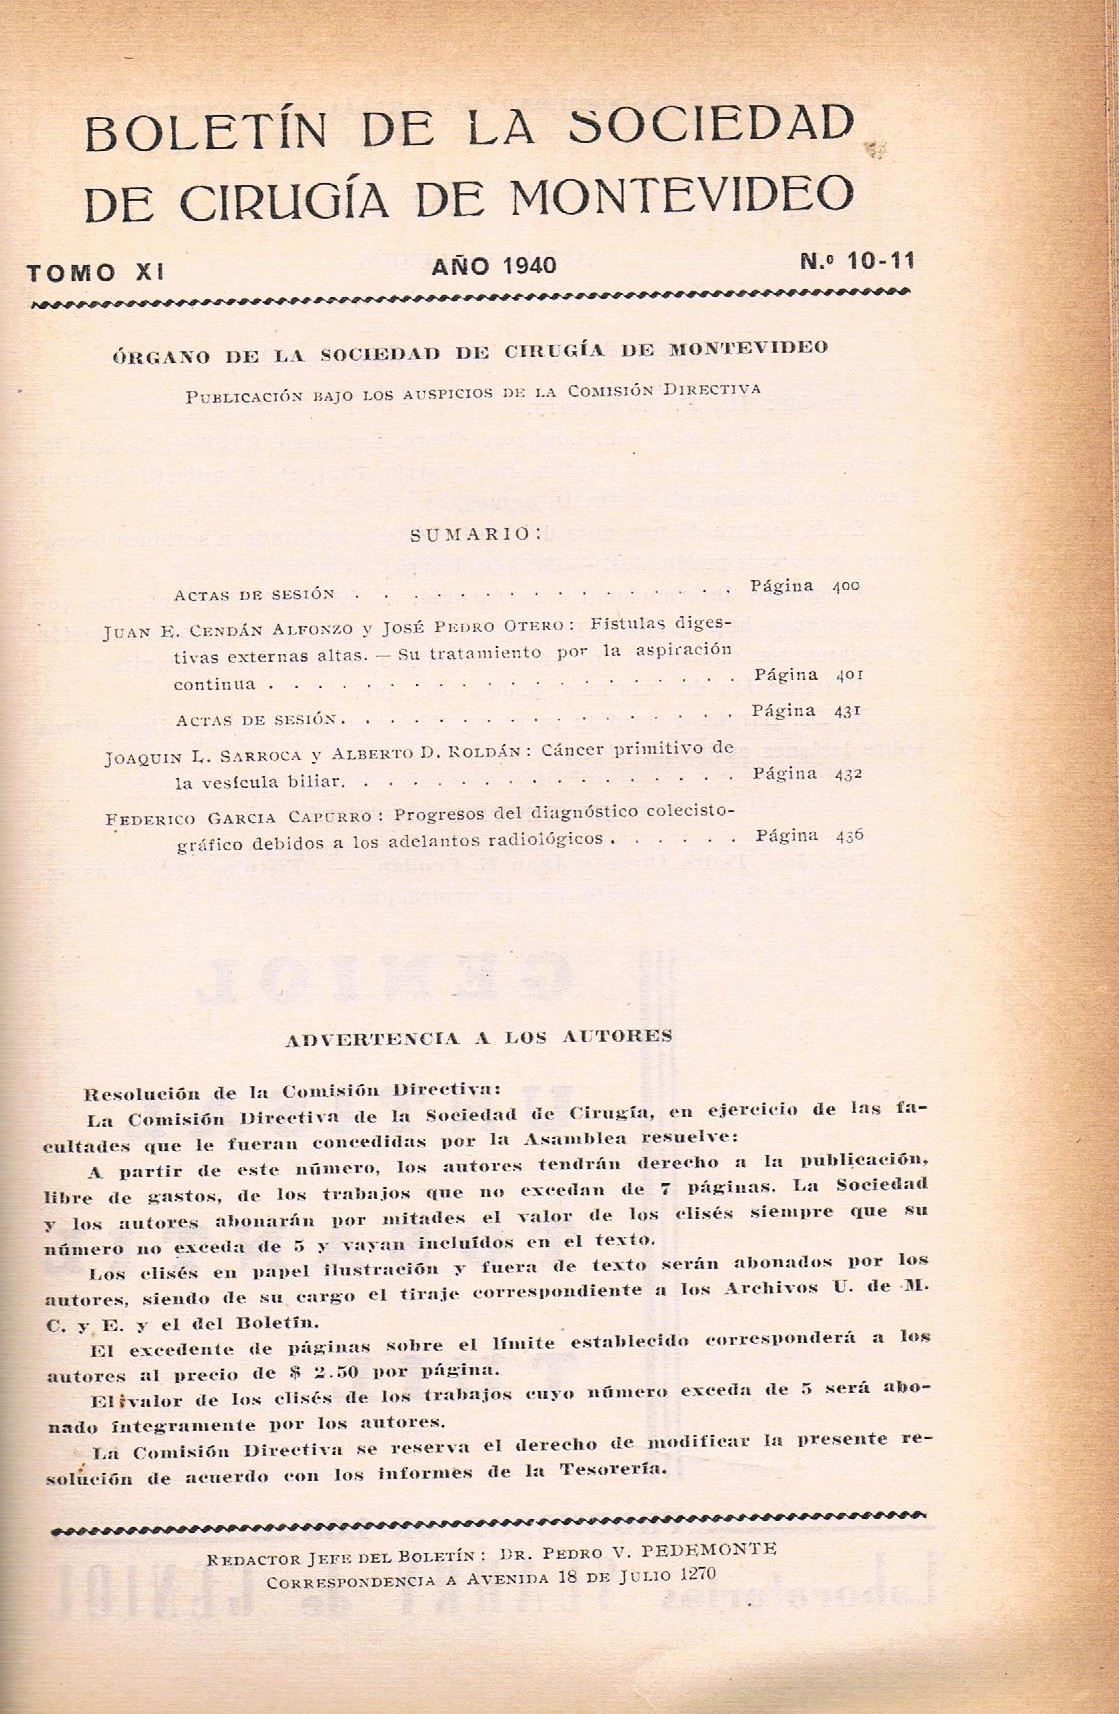 					Ver Vol. 11 Núm. 10-11 (1940): Boletín de la Sociedad de Cirugía de Montevideo
				